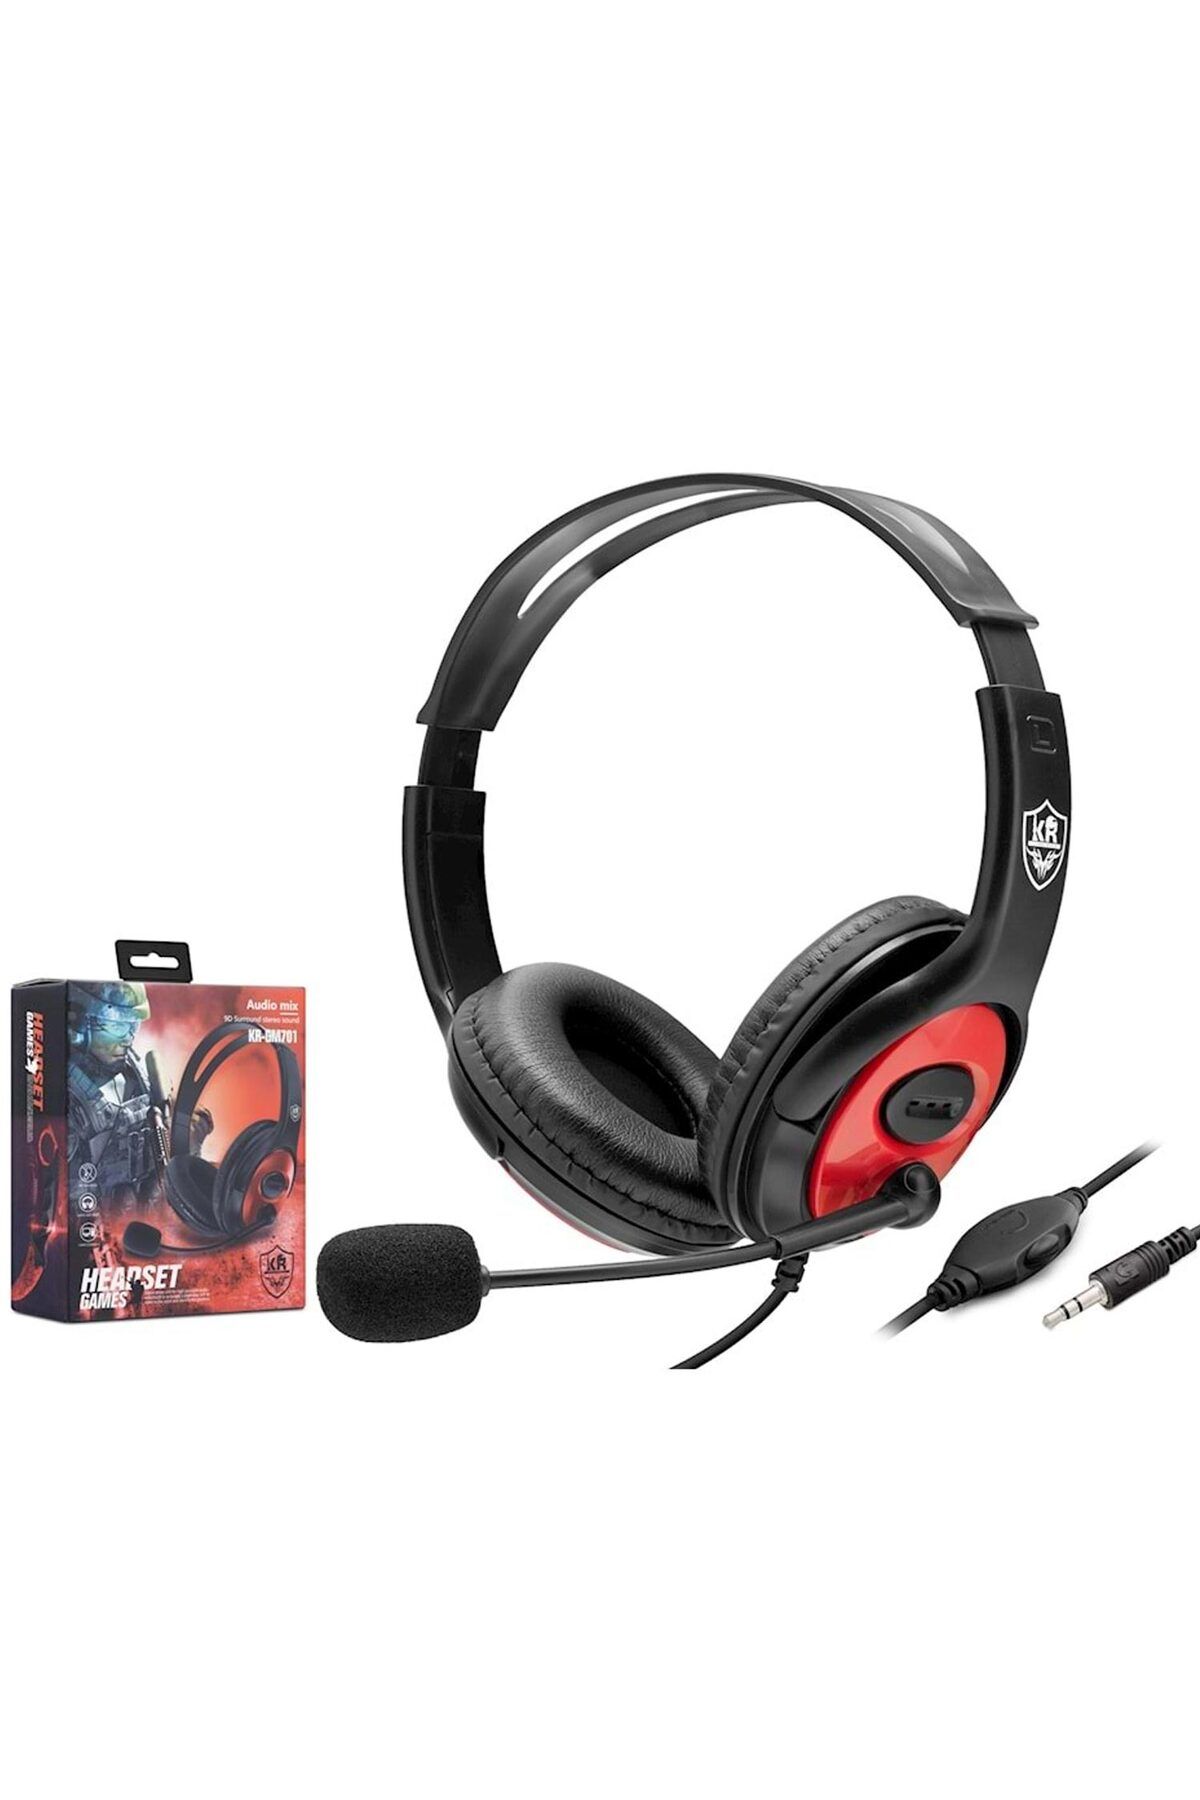 ShopZum Kablolu Oyuncu Kulak Üstü Kulaklık Mikrofonlu 1.2mt Kr-gm701